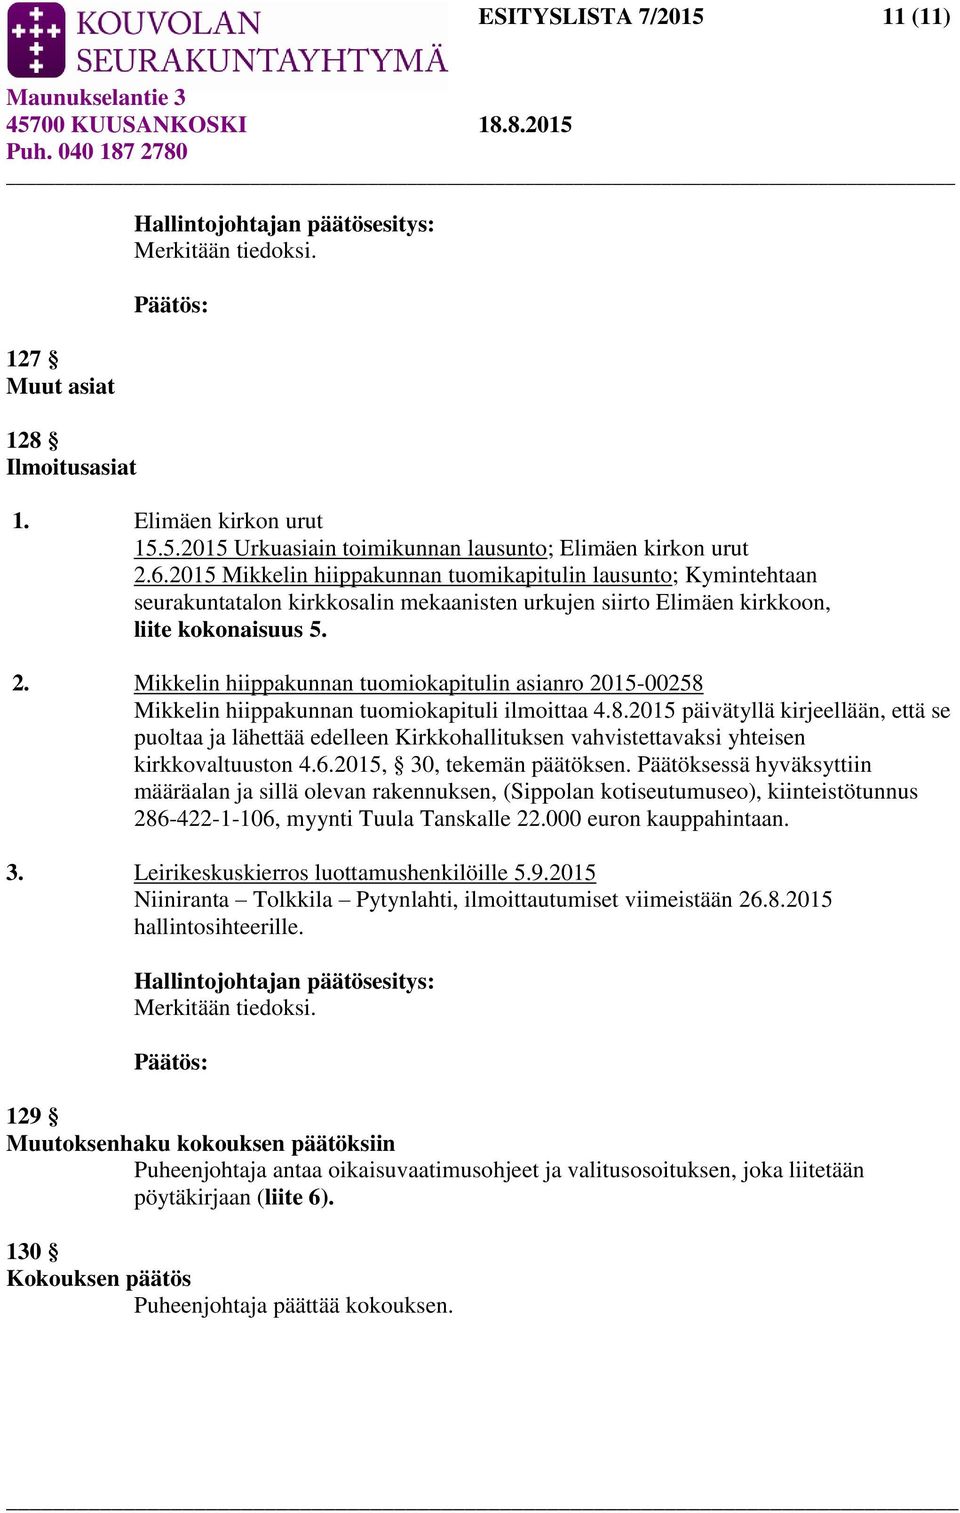 Mikkelin hiippakunnan tuomiokapitulin asianro 2015-00258 Mikkelin hiippakunnan tuomiokapituli ilmoittaa 4.8.2015 päivätyllä kirjeellään, että se puoltaa ja lähettää edelleen Kirkkohallituksen vahvistettavaksi yhteisen kirkkovaltuuston 4.